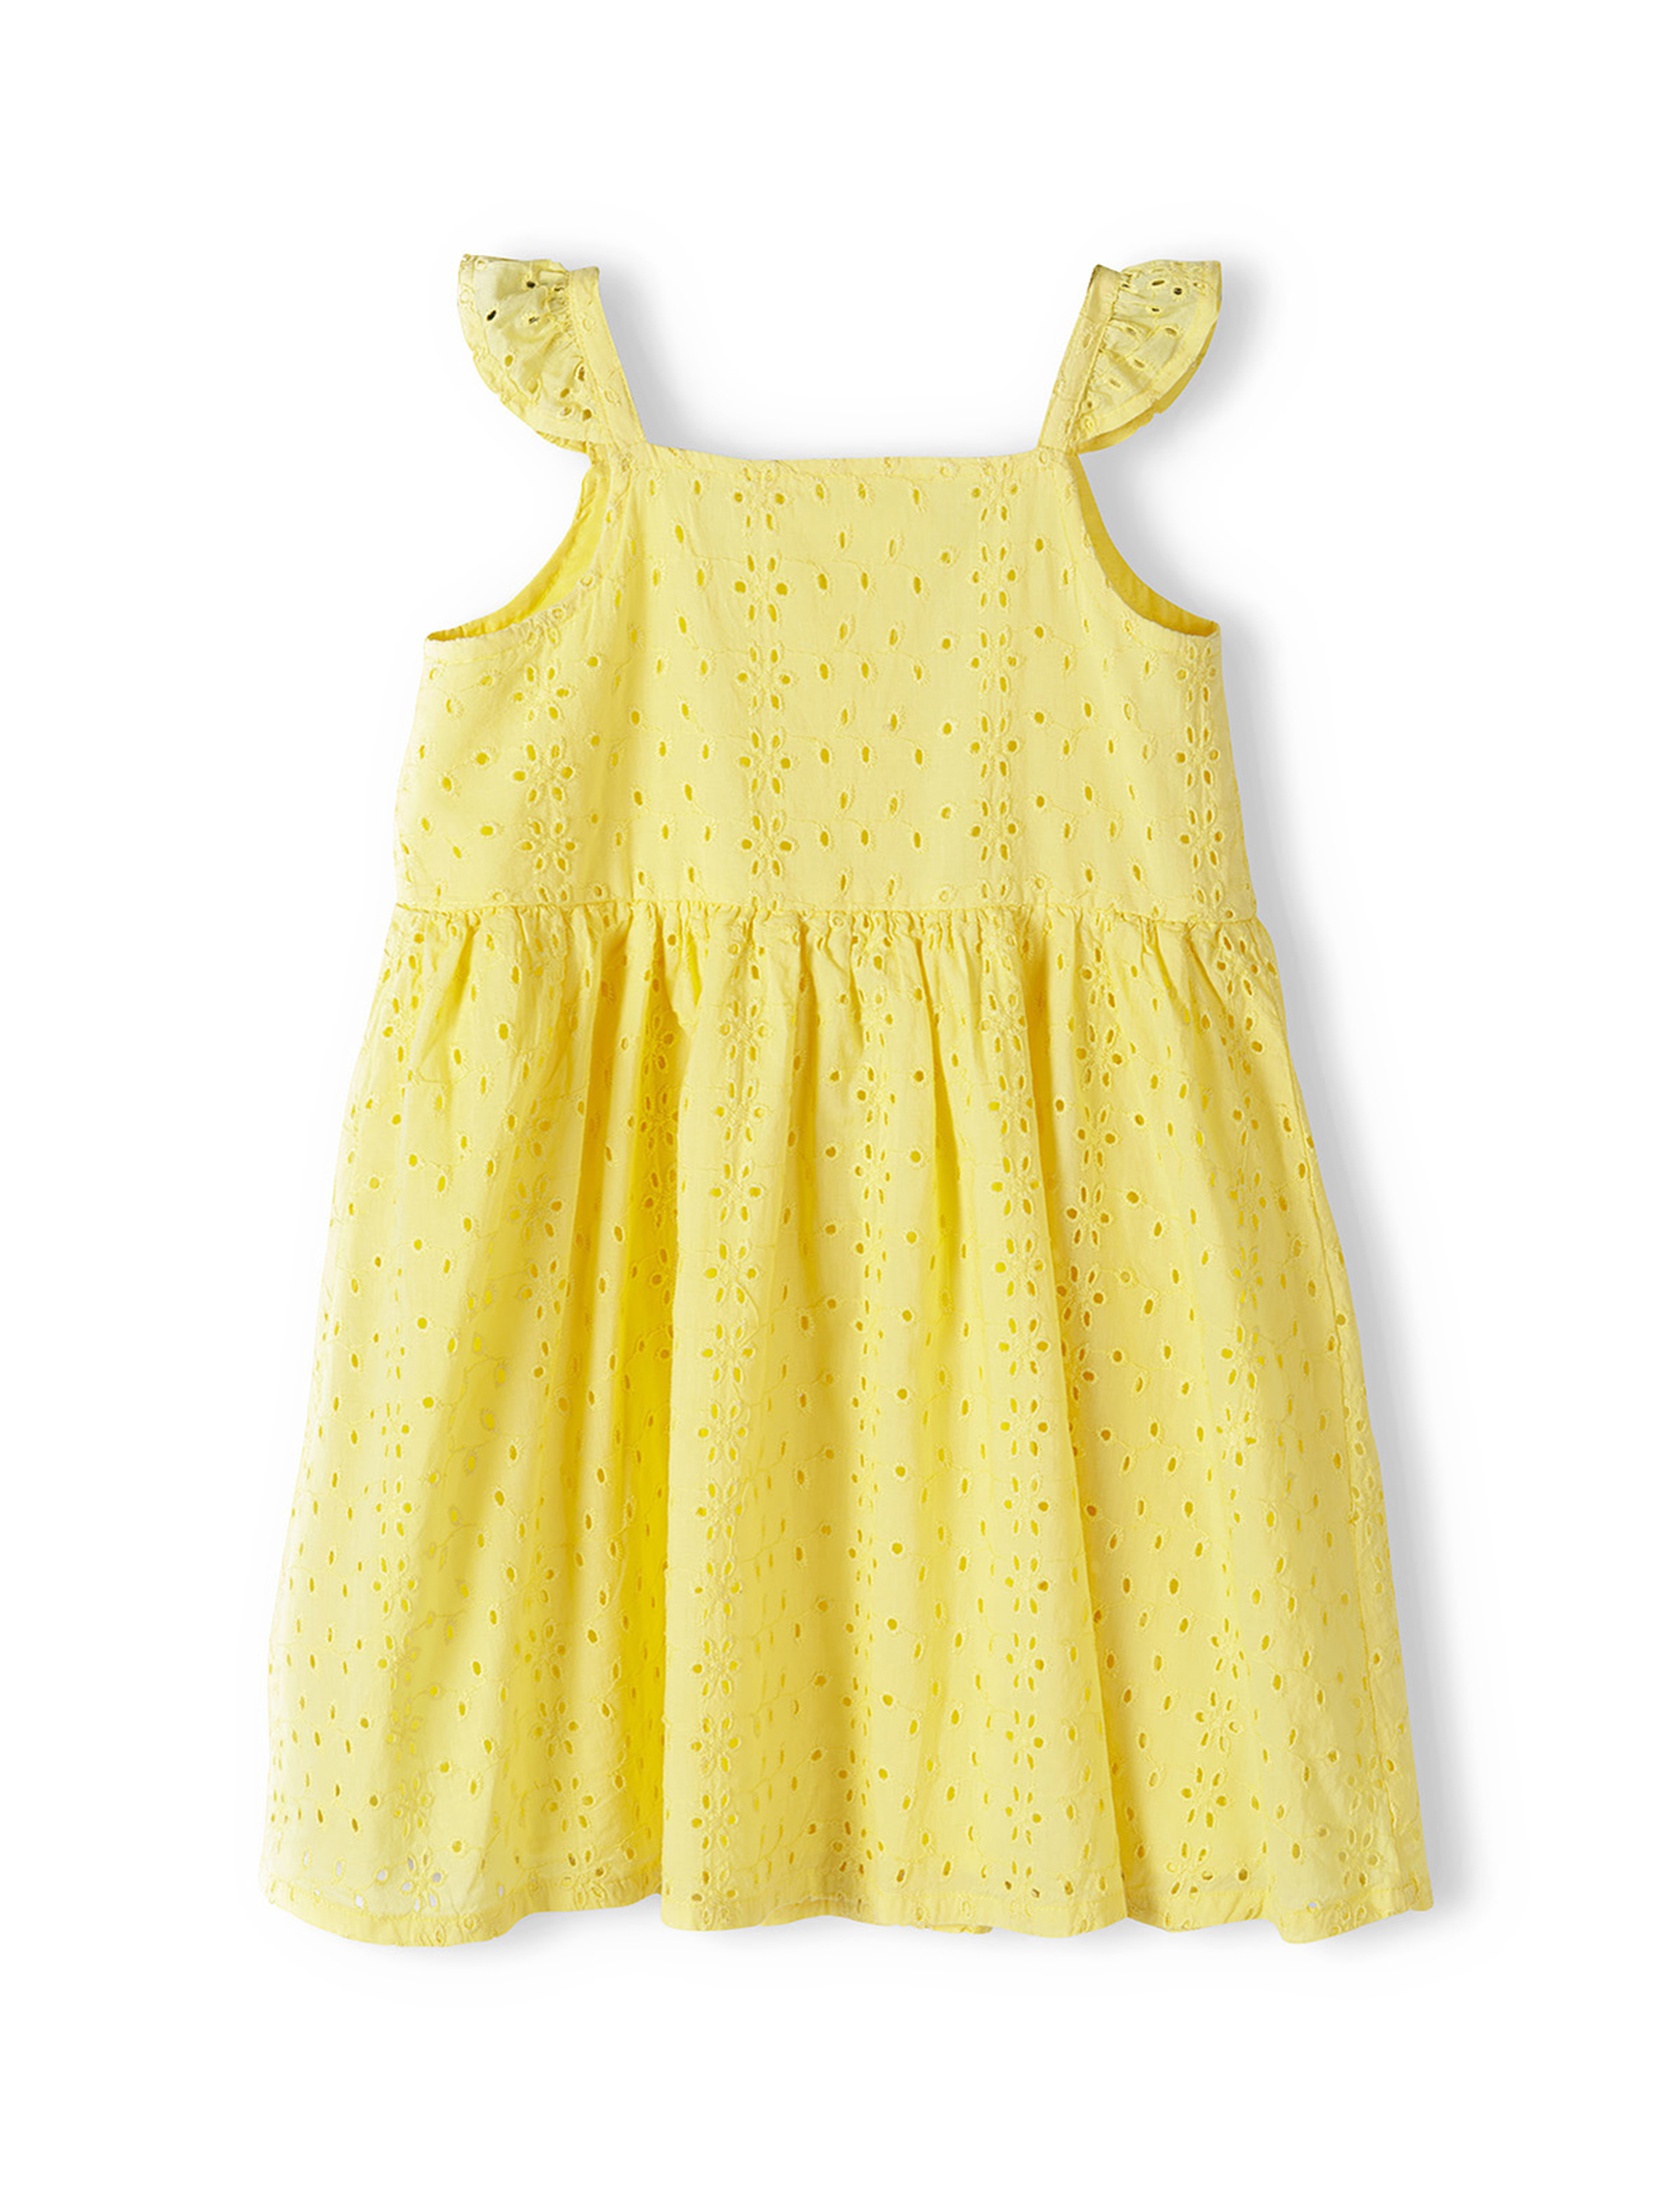 Żółta sukienka niemowlęca haftowana na ramiączkach